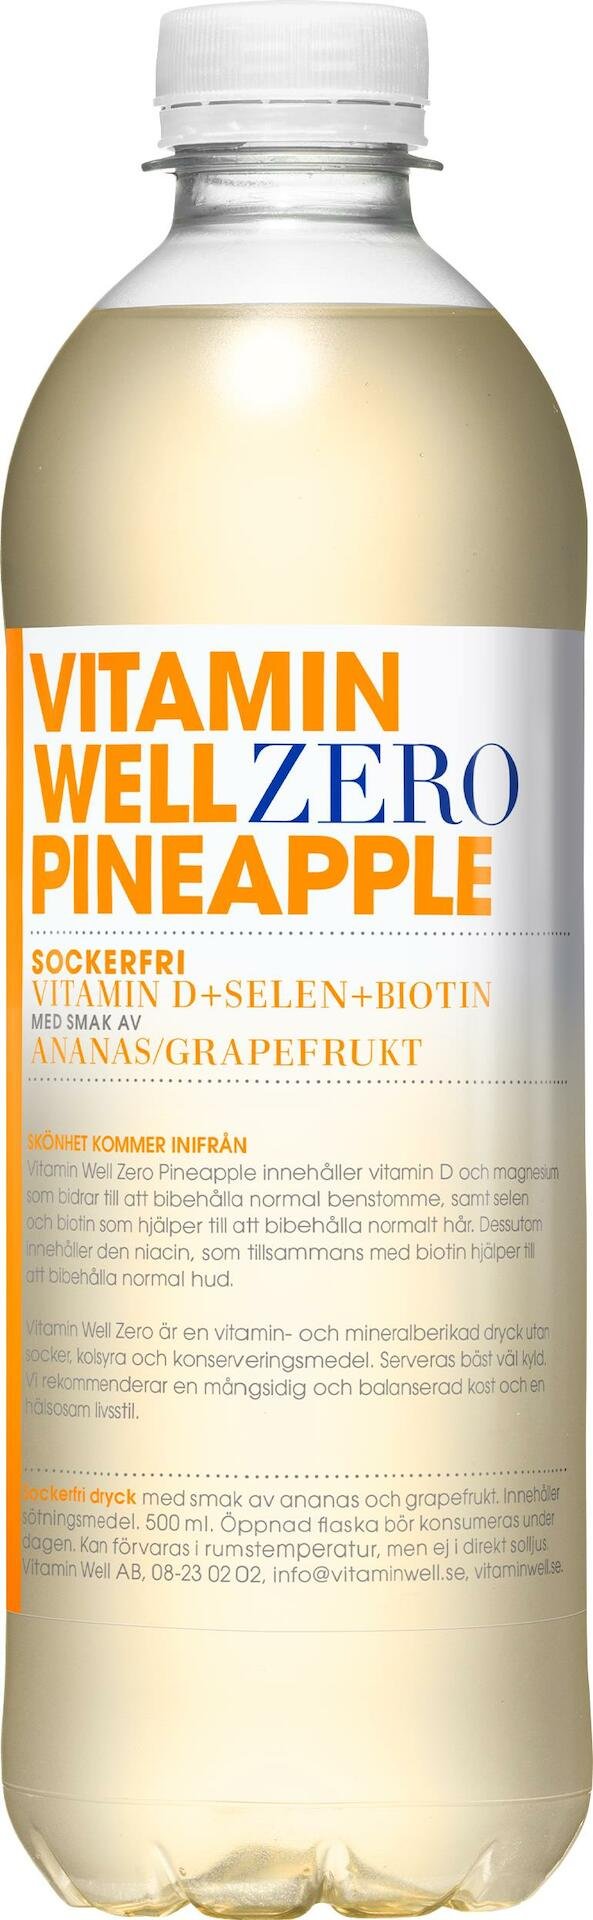 Vitamin Well Zero Pineapple 500 ml